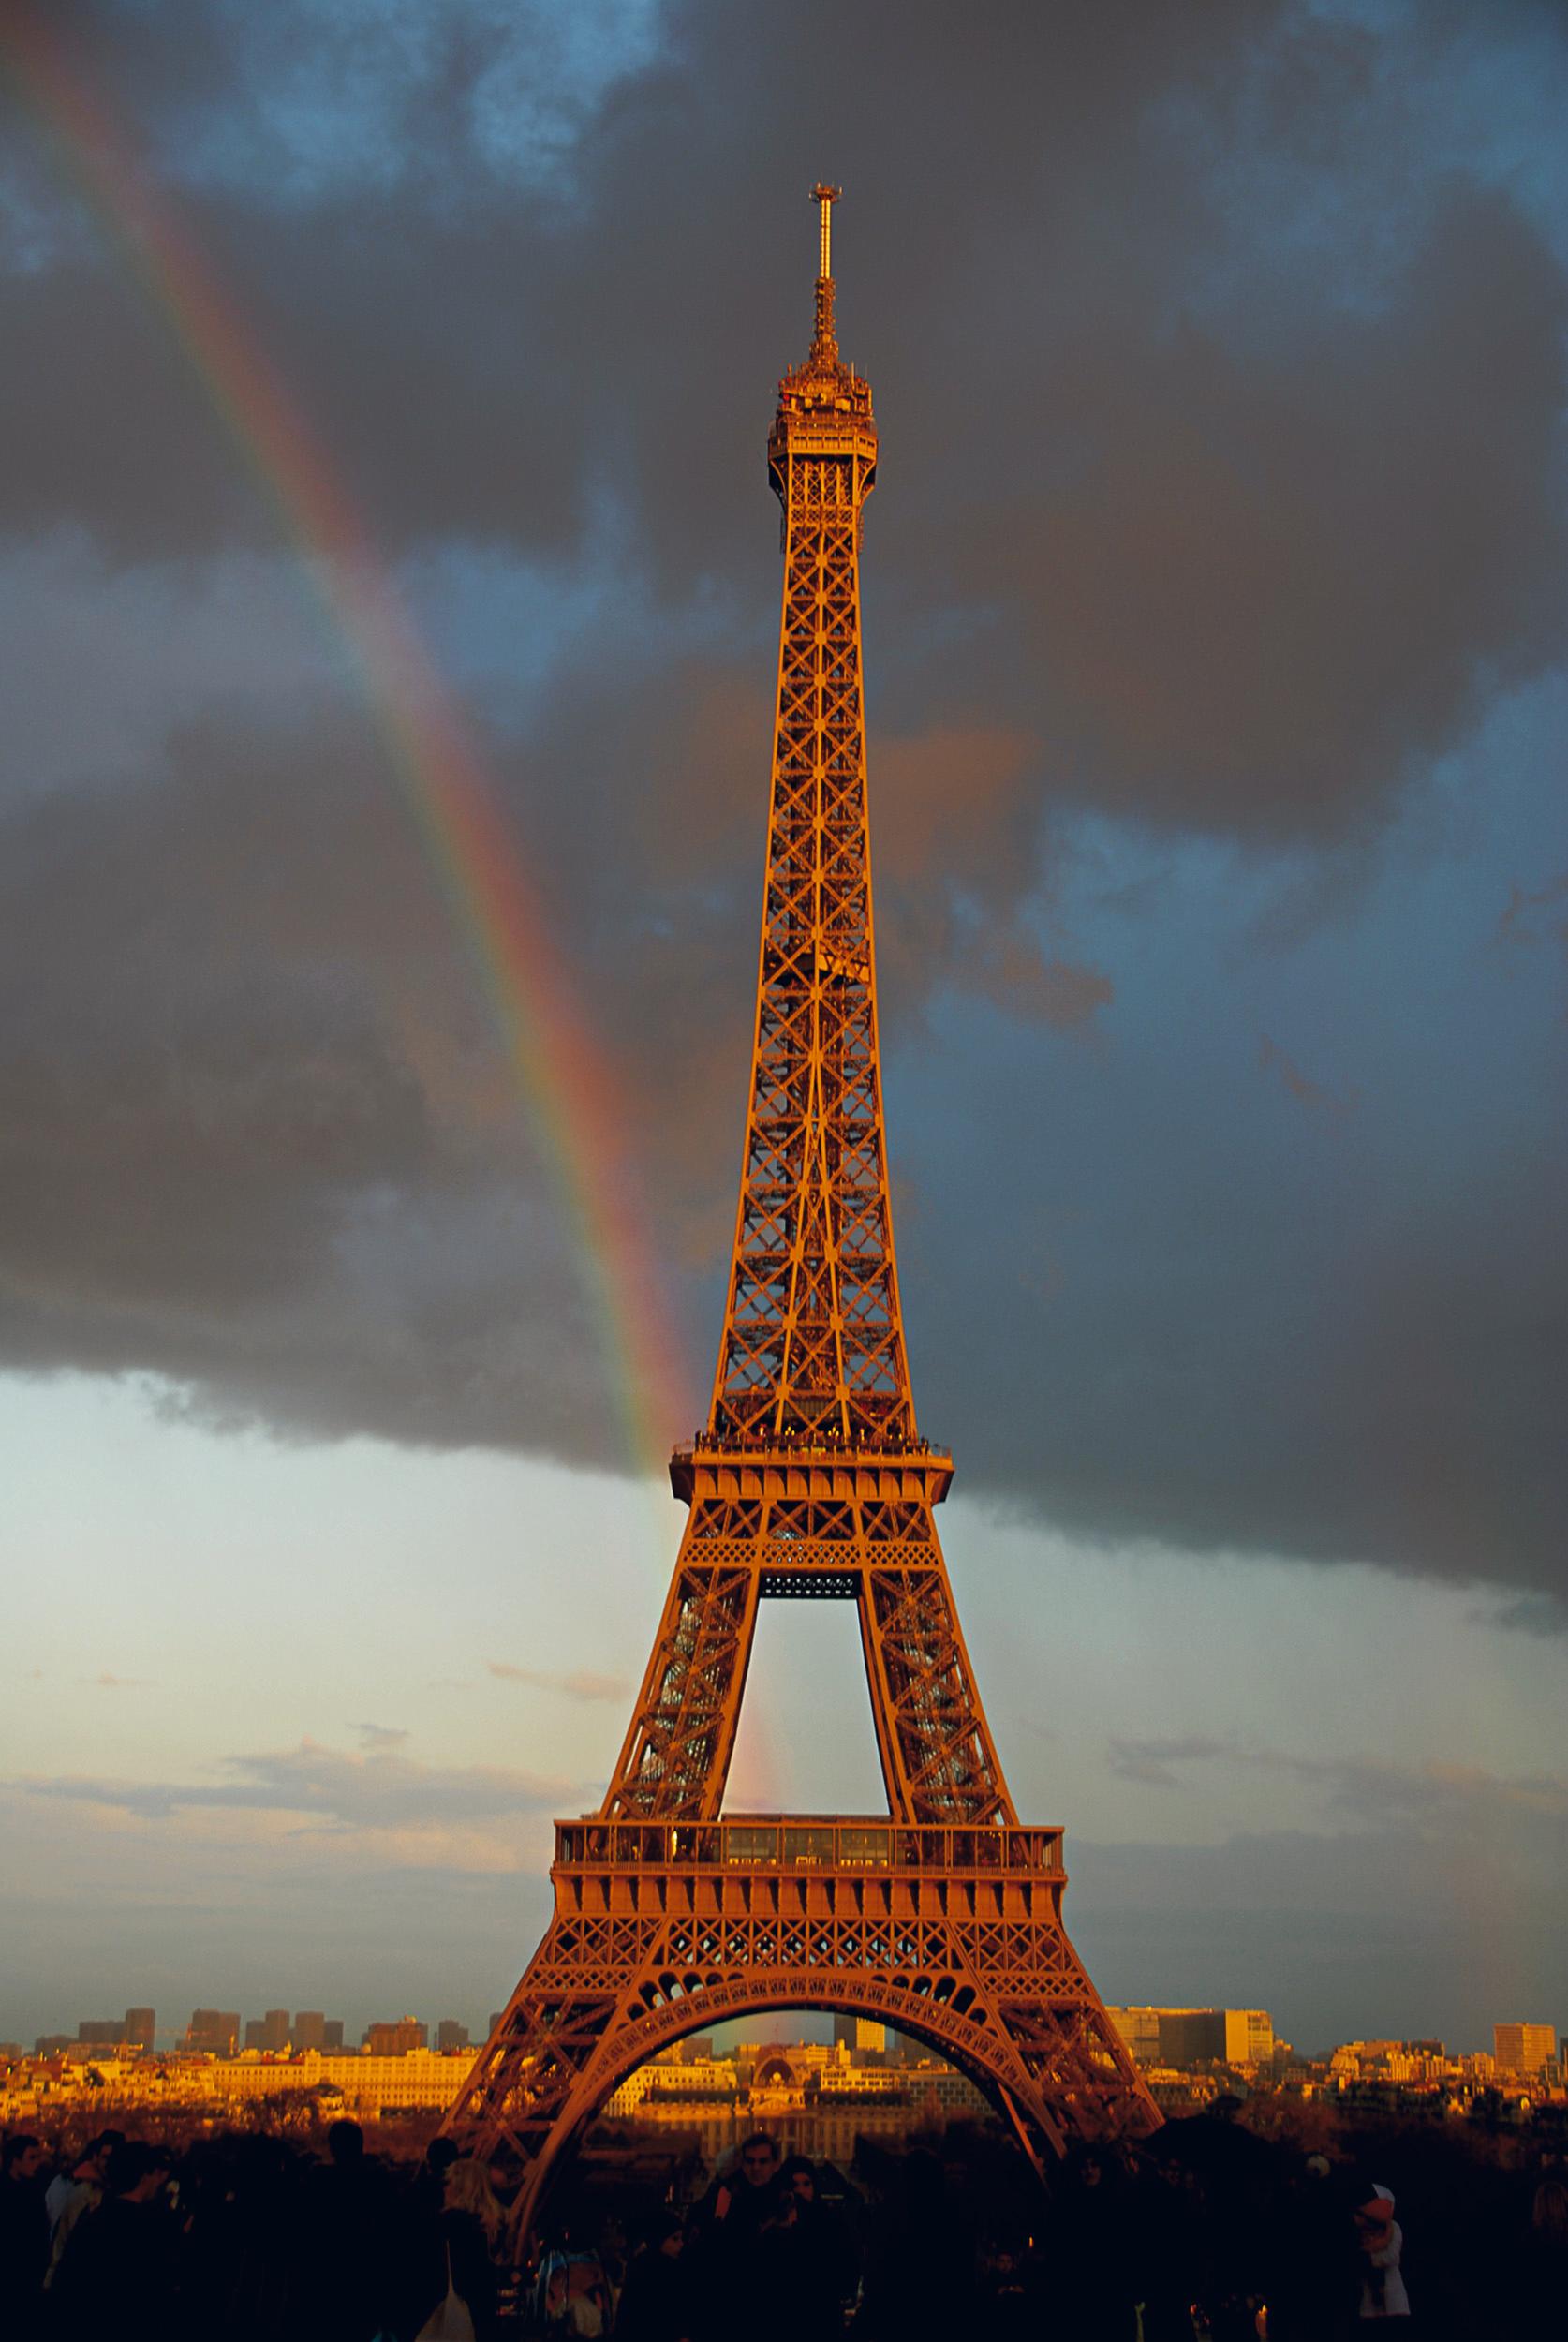 Michael K. Yamaoka  Landscape Photograph - American Contemporary Photo by M.K. Yamaoka - Rainbow at the Eiffel Tower